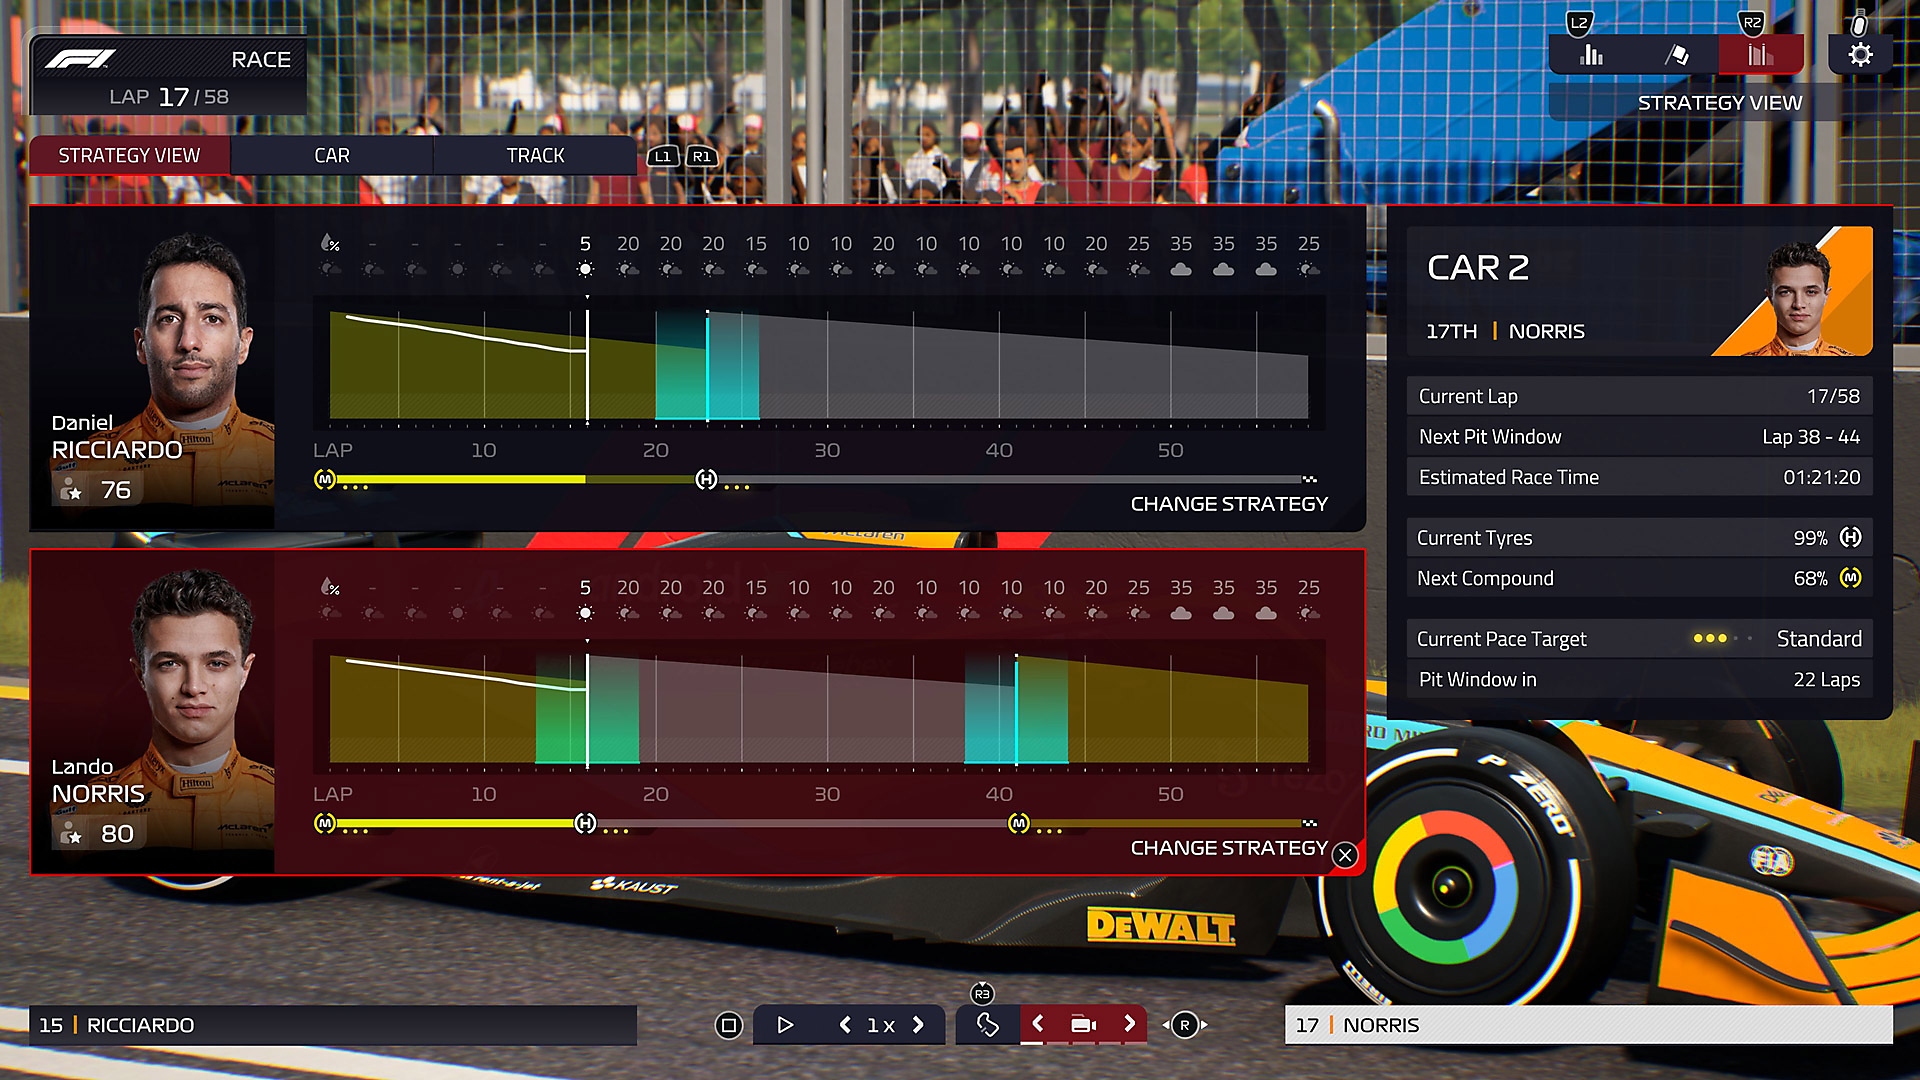 F1 Manager 2022 - screenshot van de game-interface waarin twee racers worden vergeleken